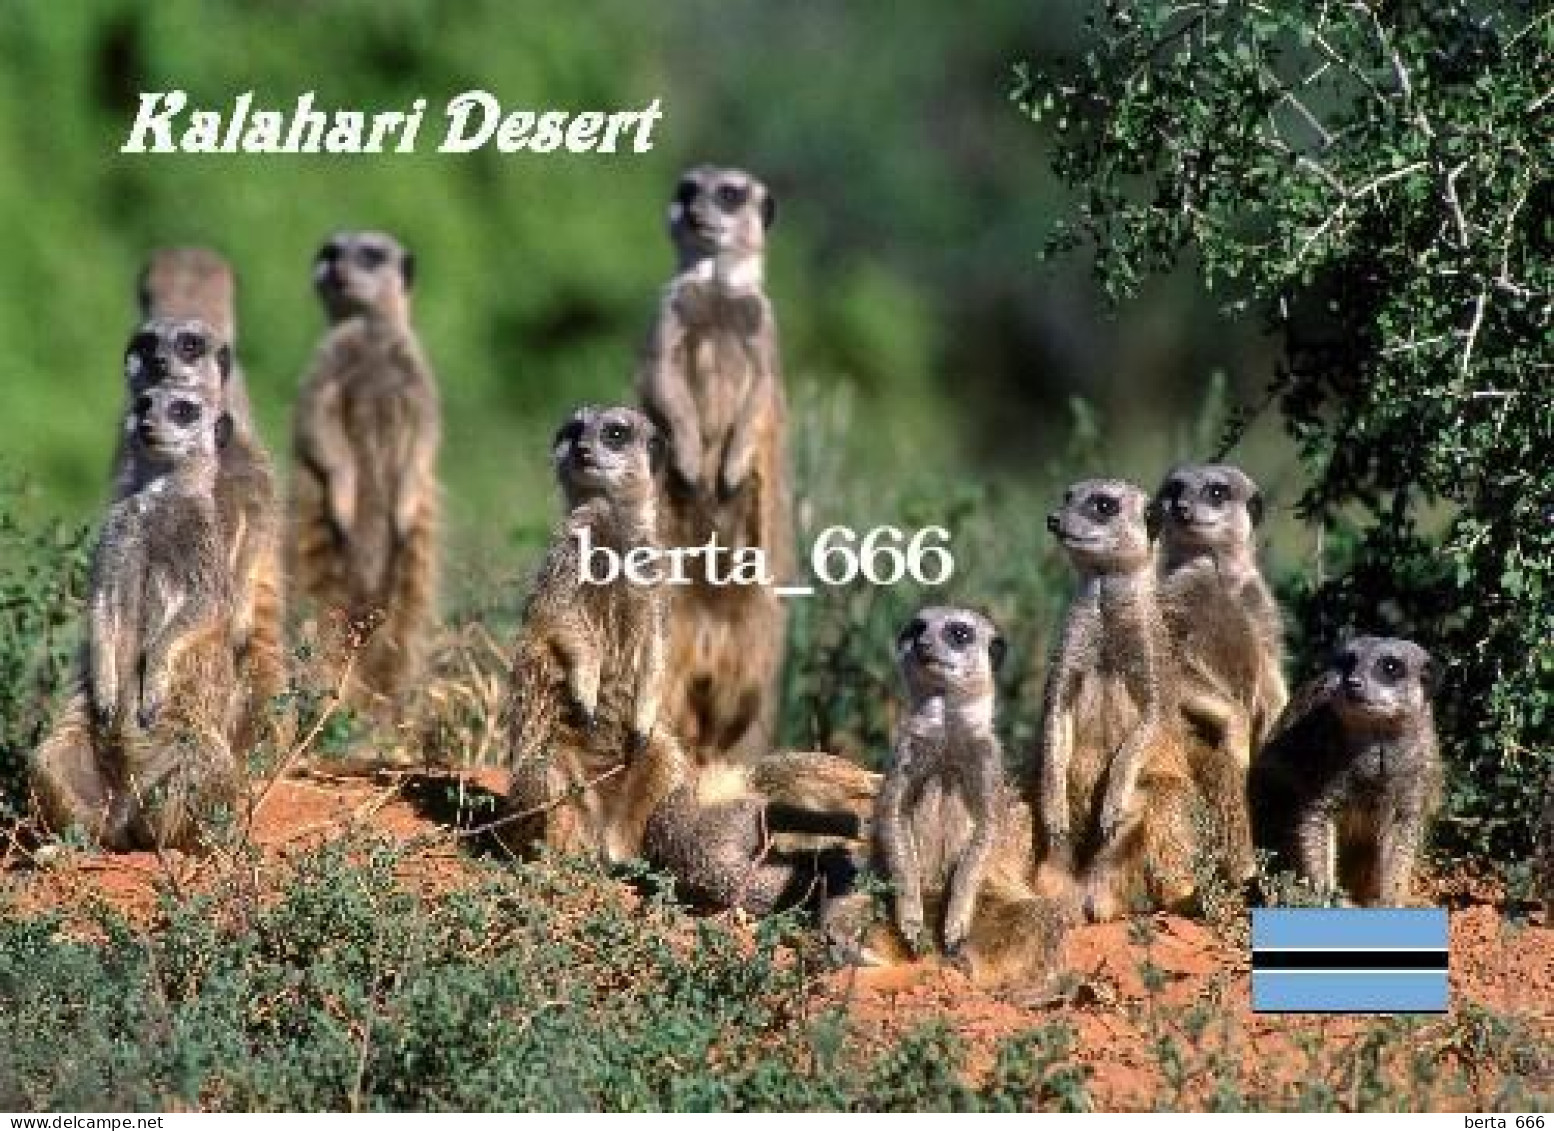 Botswana Kalahari Desert Meerkats New Postcard - Botsuana